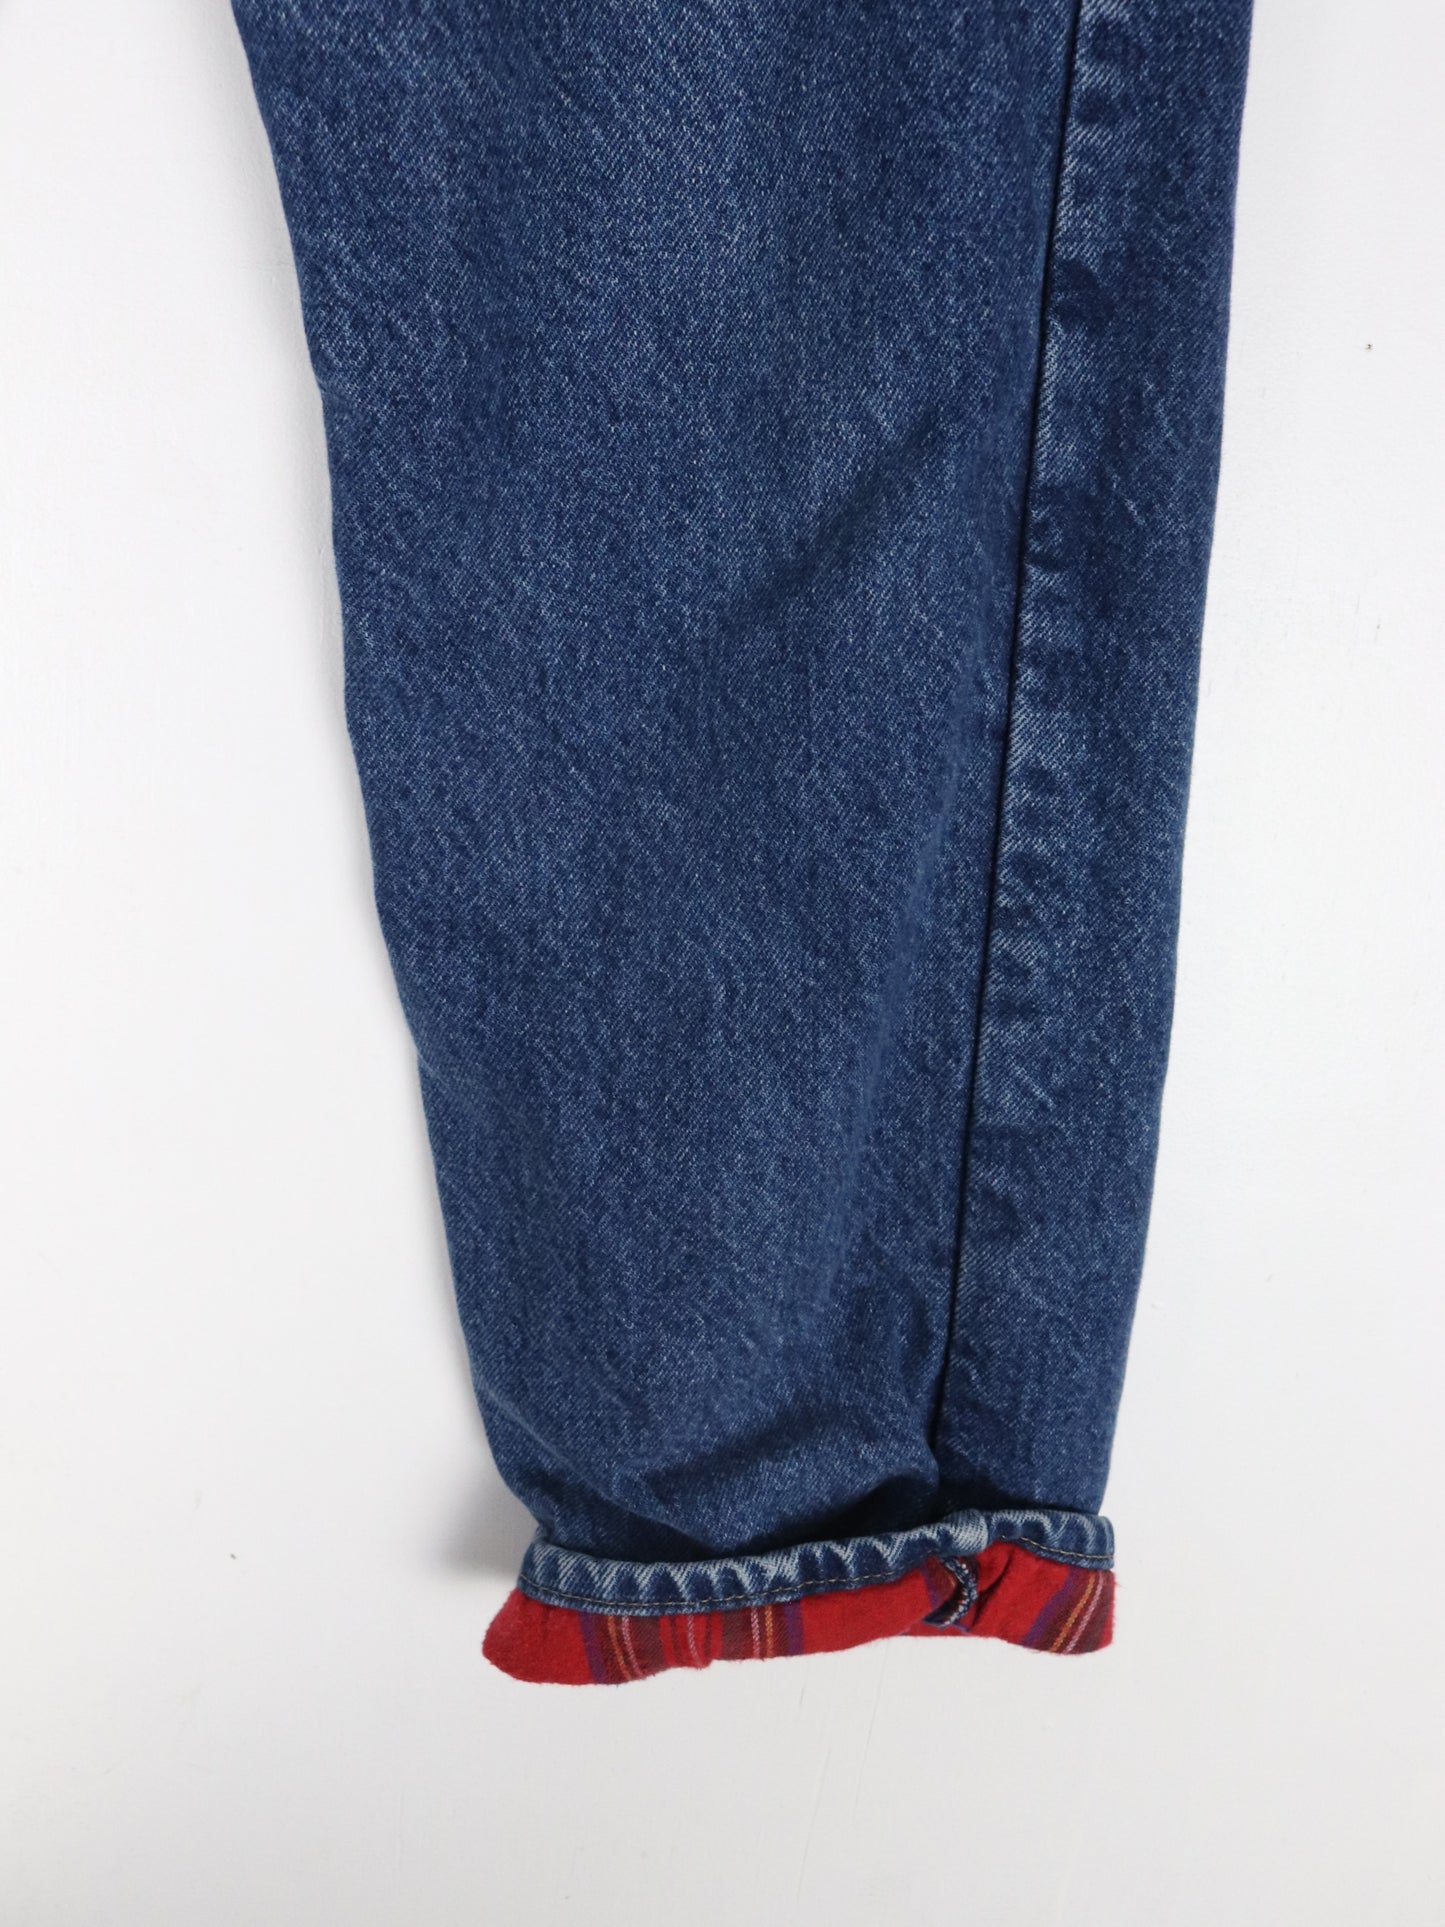 Vintage L.L. Bean Pants Fits Mens 34 x 29 Blue Denim Jeans Flannel Lined